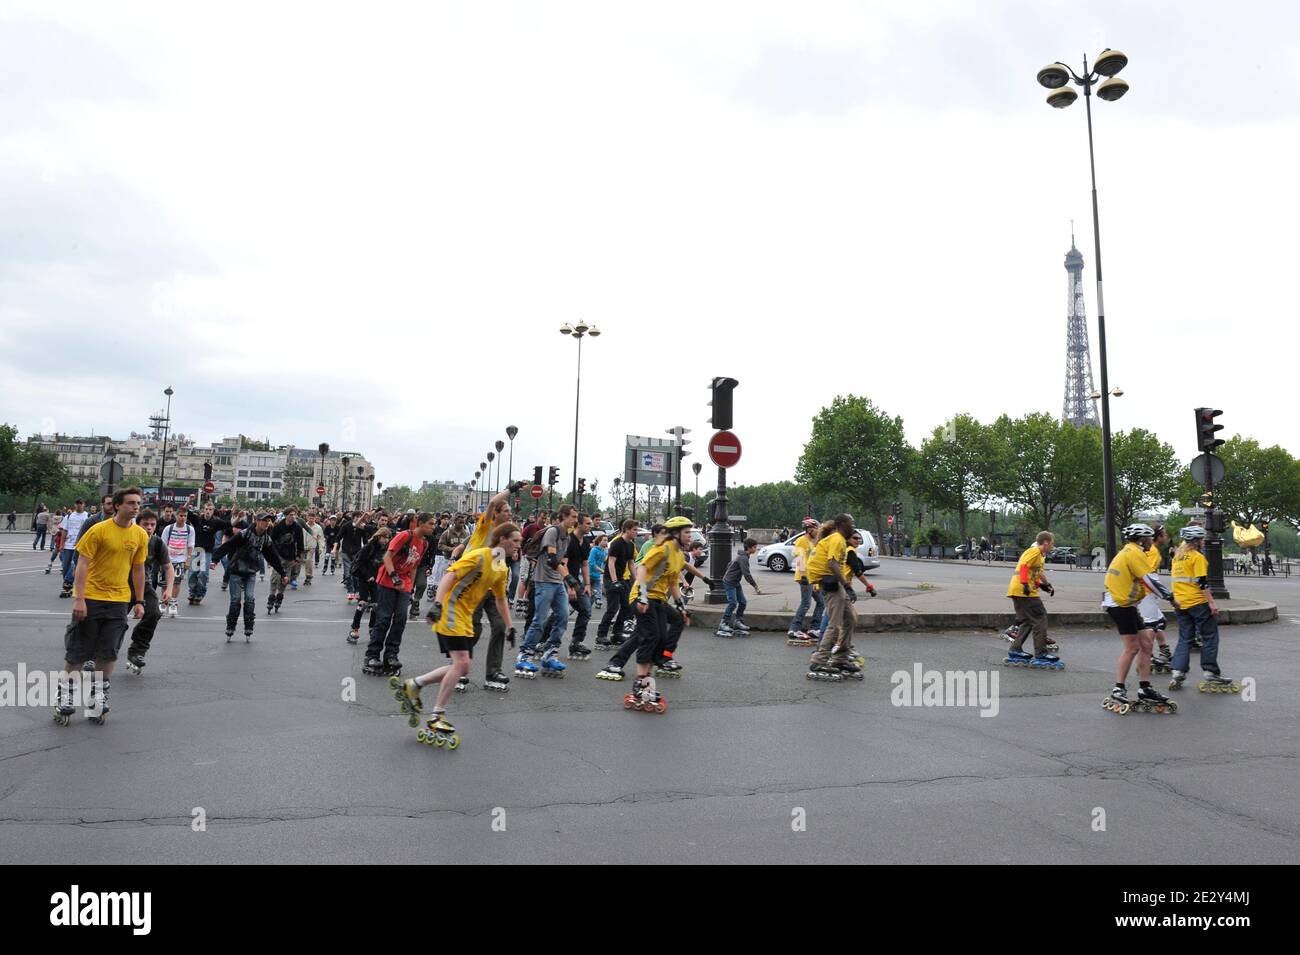 Avant le méga-saut mobile M6 réalisé par le champion français mondial de  Roller Taig Khris, une roller Parade a été organisée towrds the Paris  Streets, France, le 29 mai 2010. Photo par